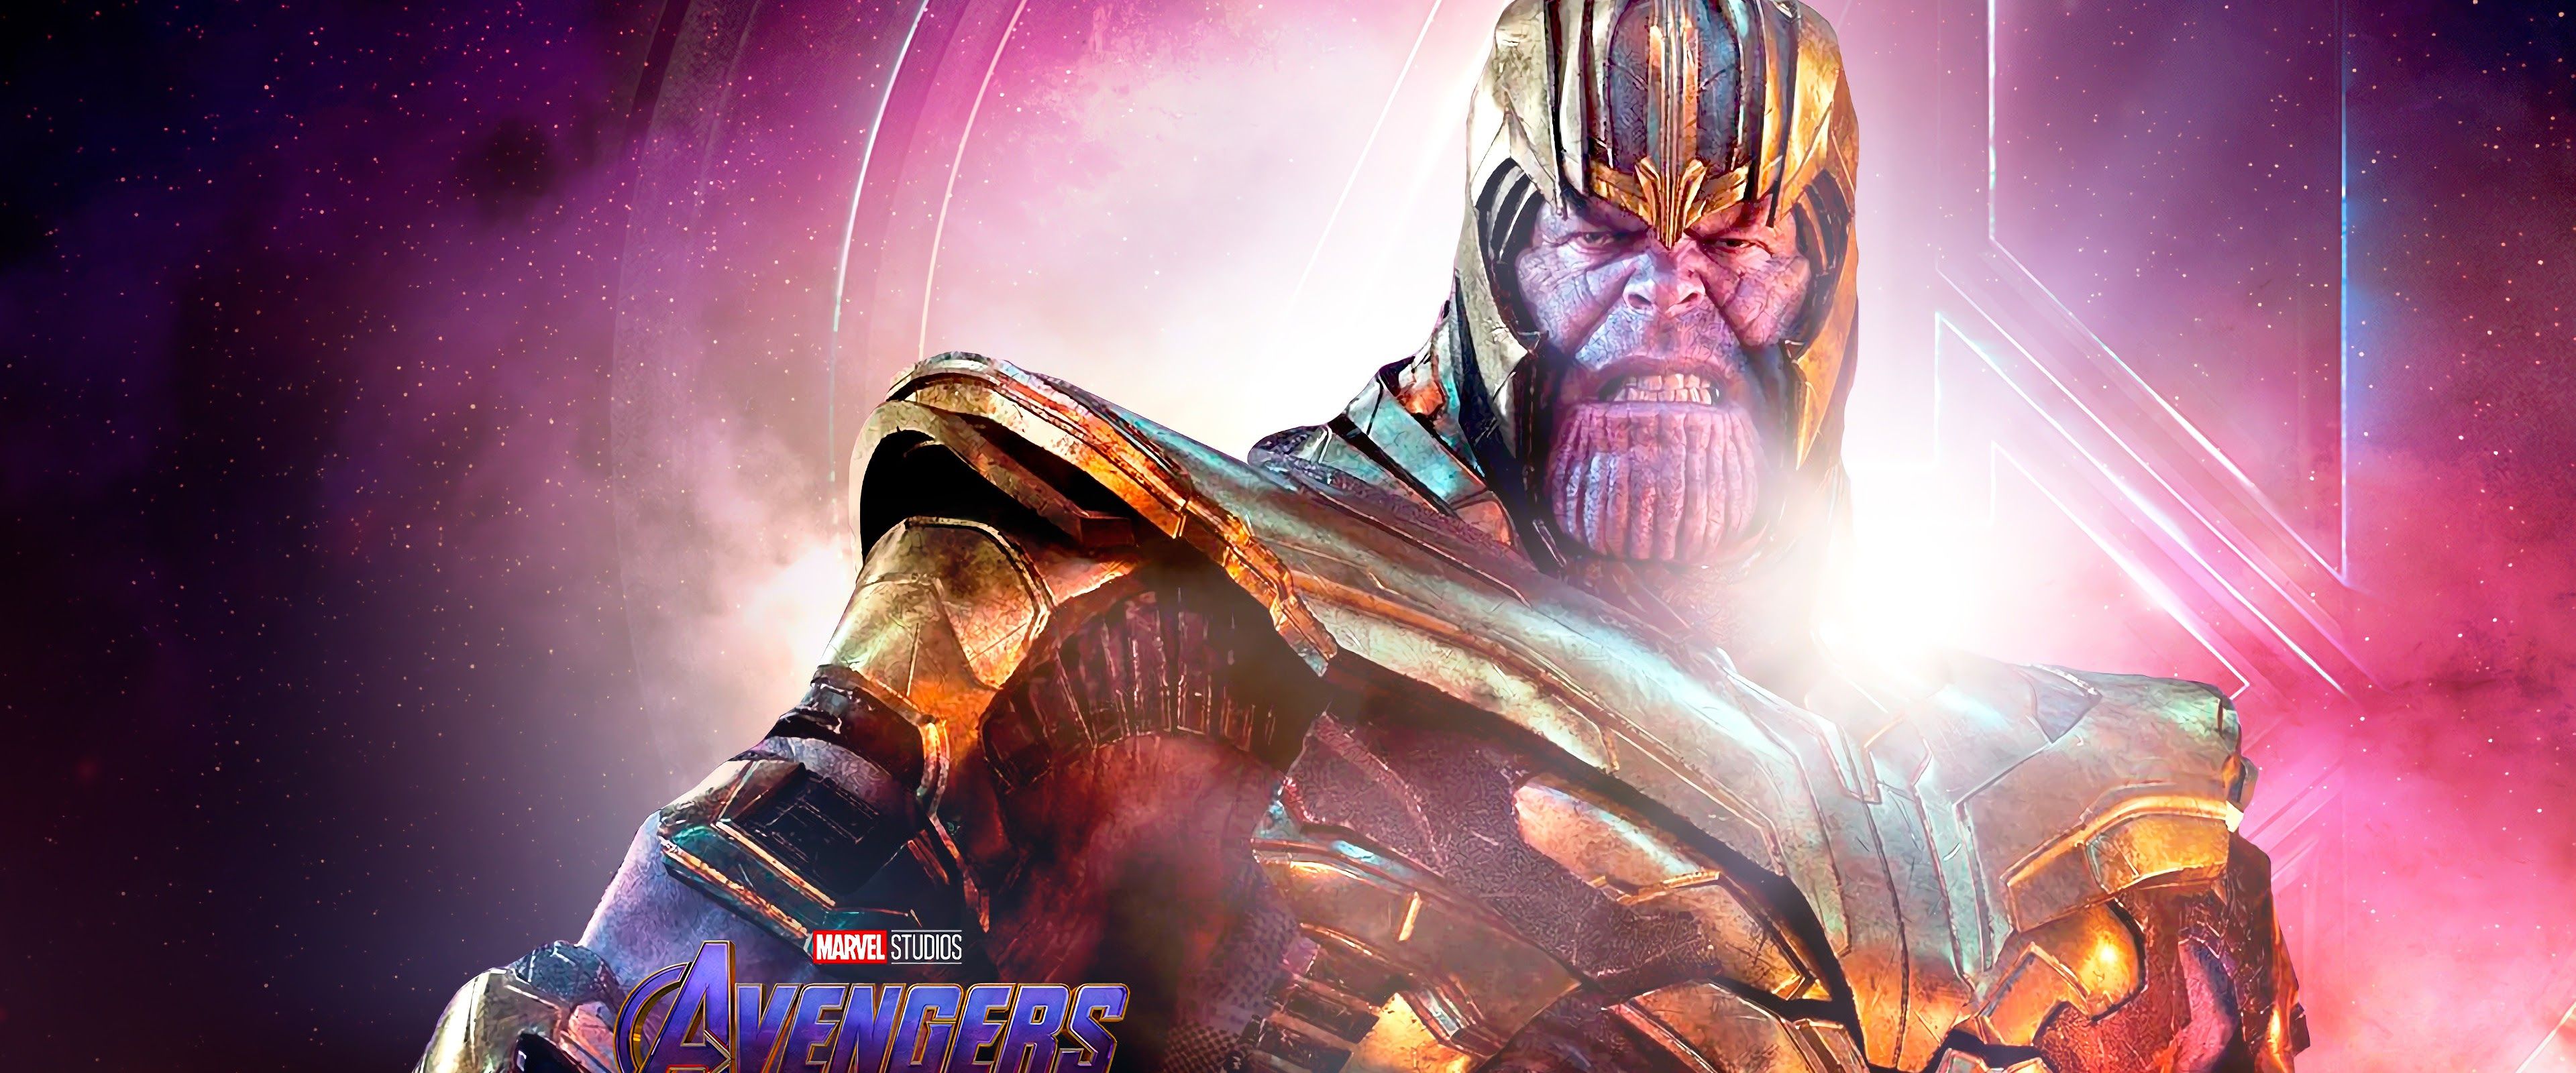 Avengers: Endgame Thanos 4K Wallpaper uhdpaper.com